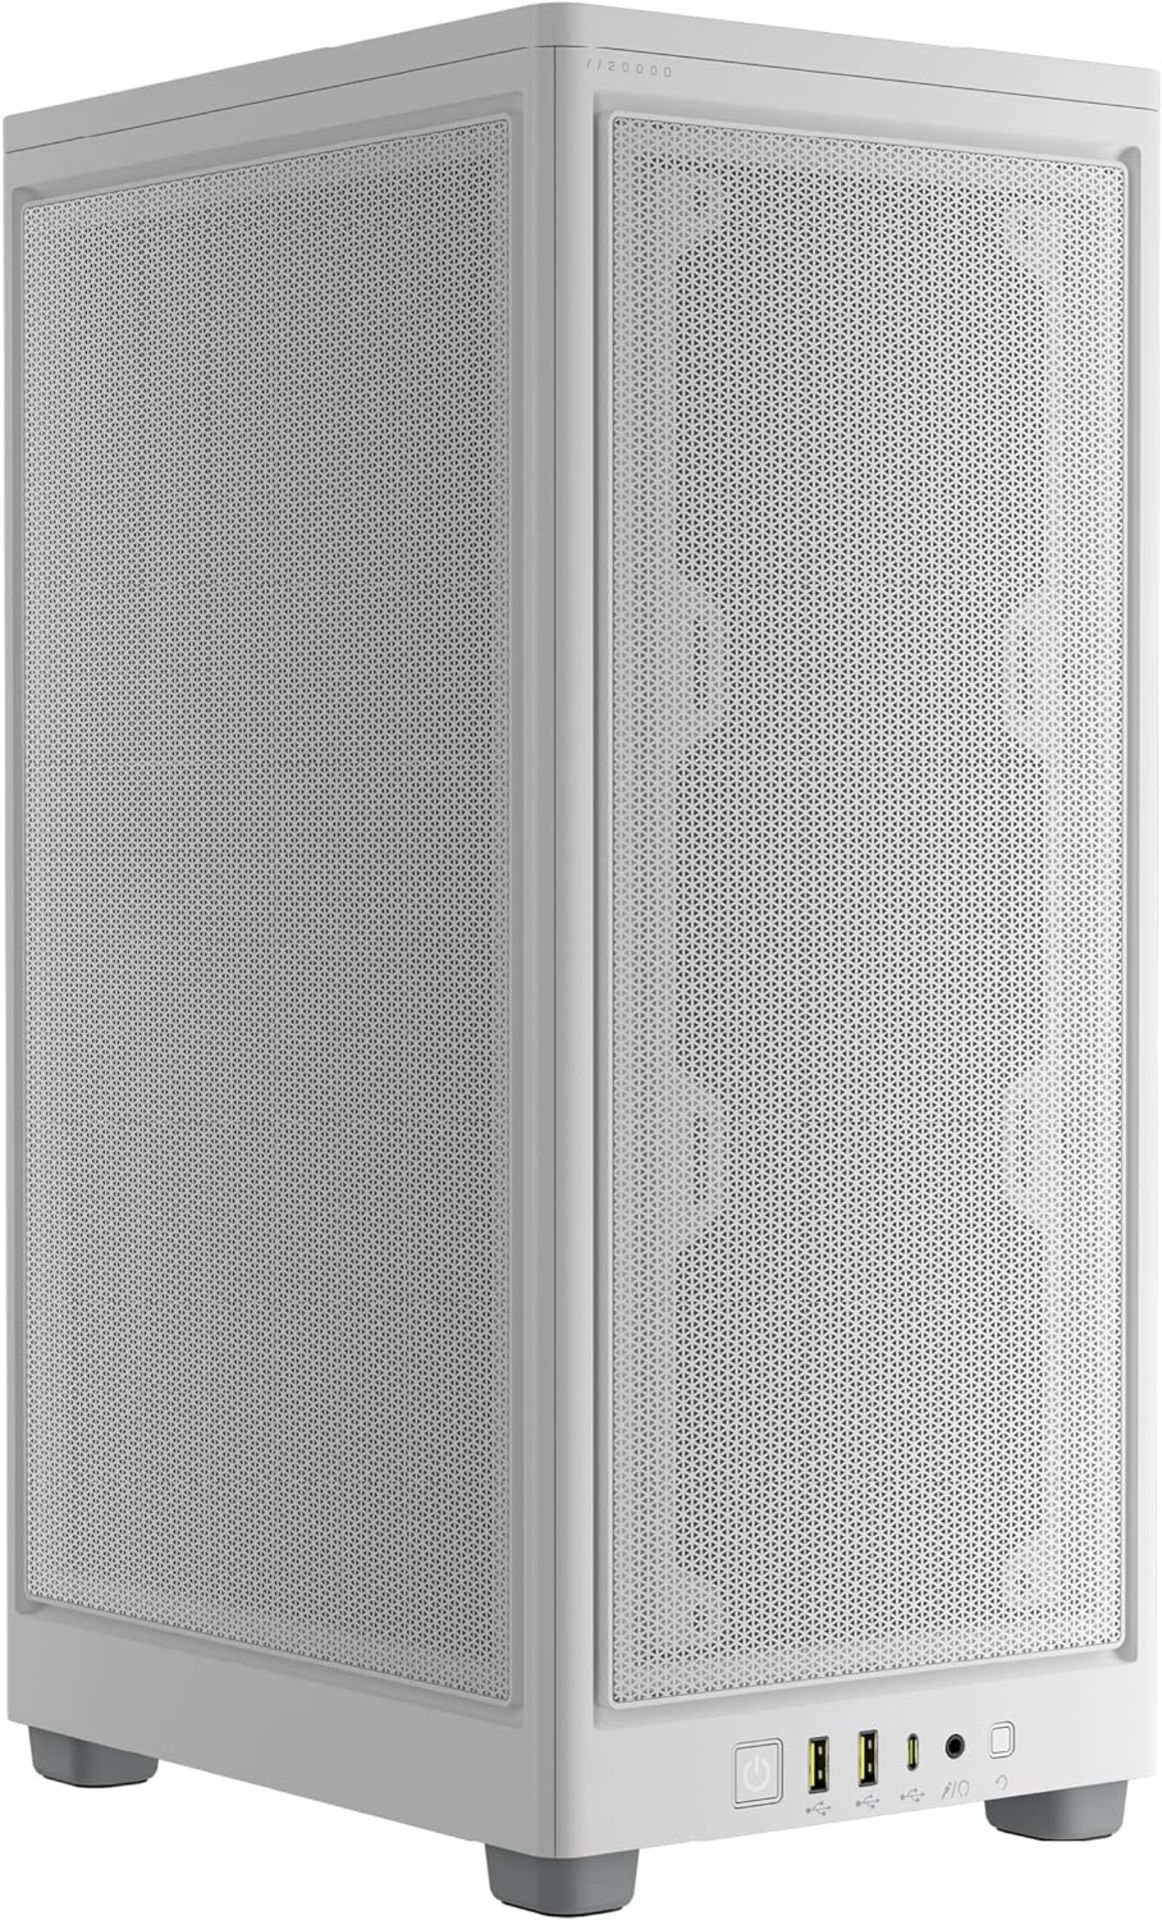 NEW & BOXED CORSAIR 2000D Airflow Mini-ITX PC Case - WHITE. RRP £99.99. (R15R). A Fitting Choice: